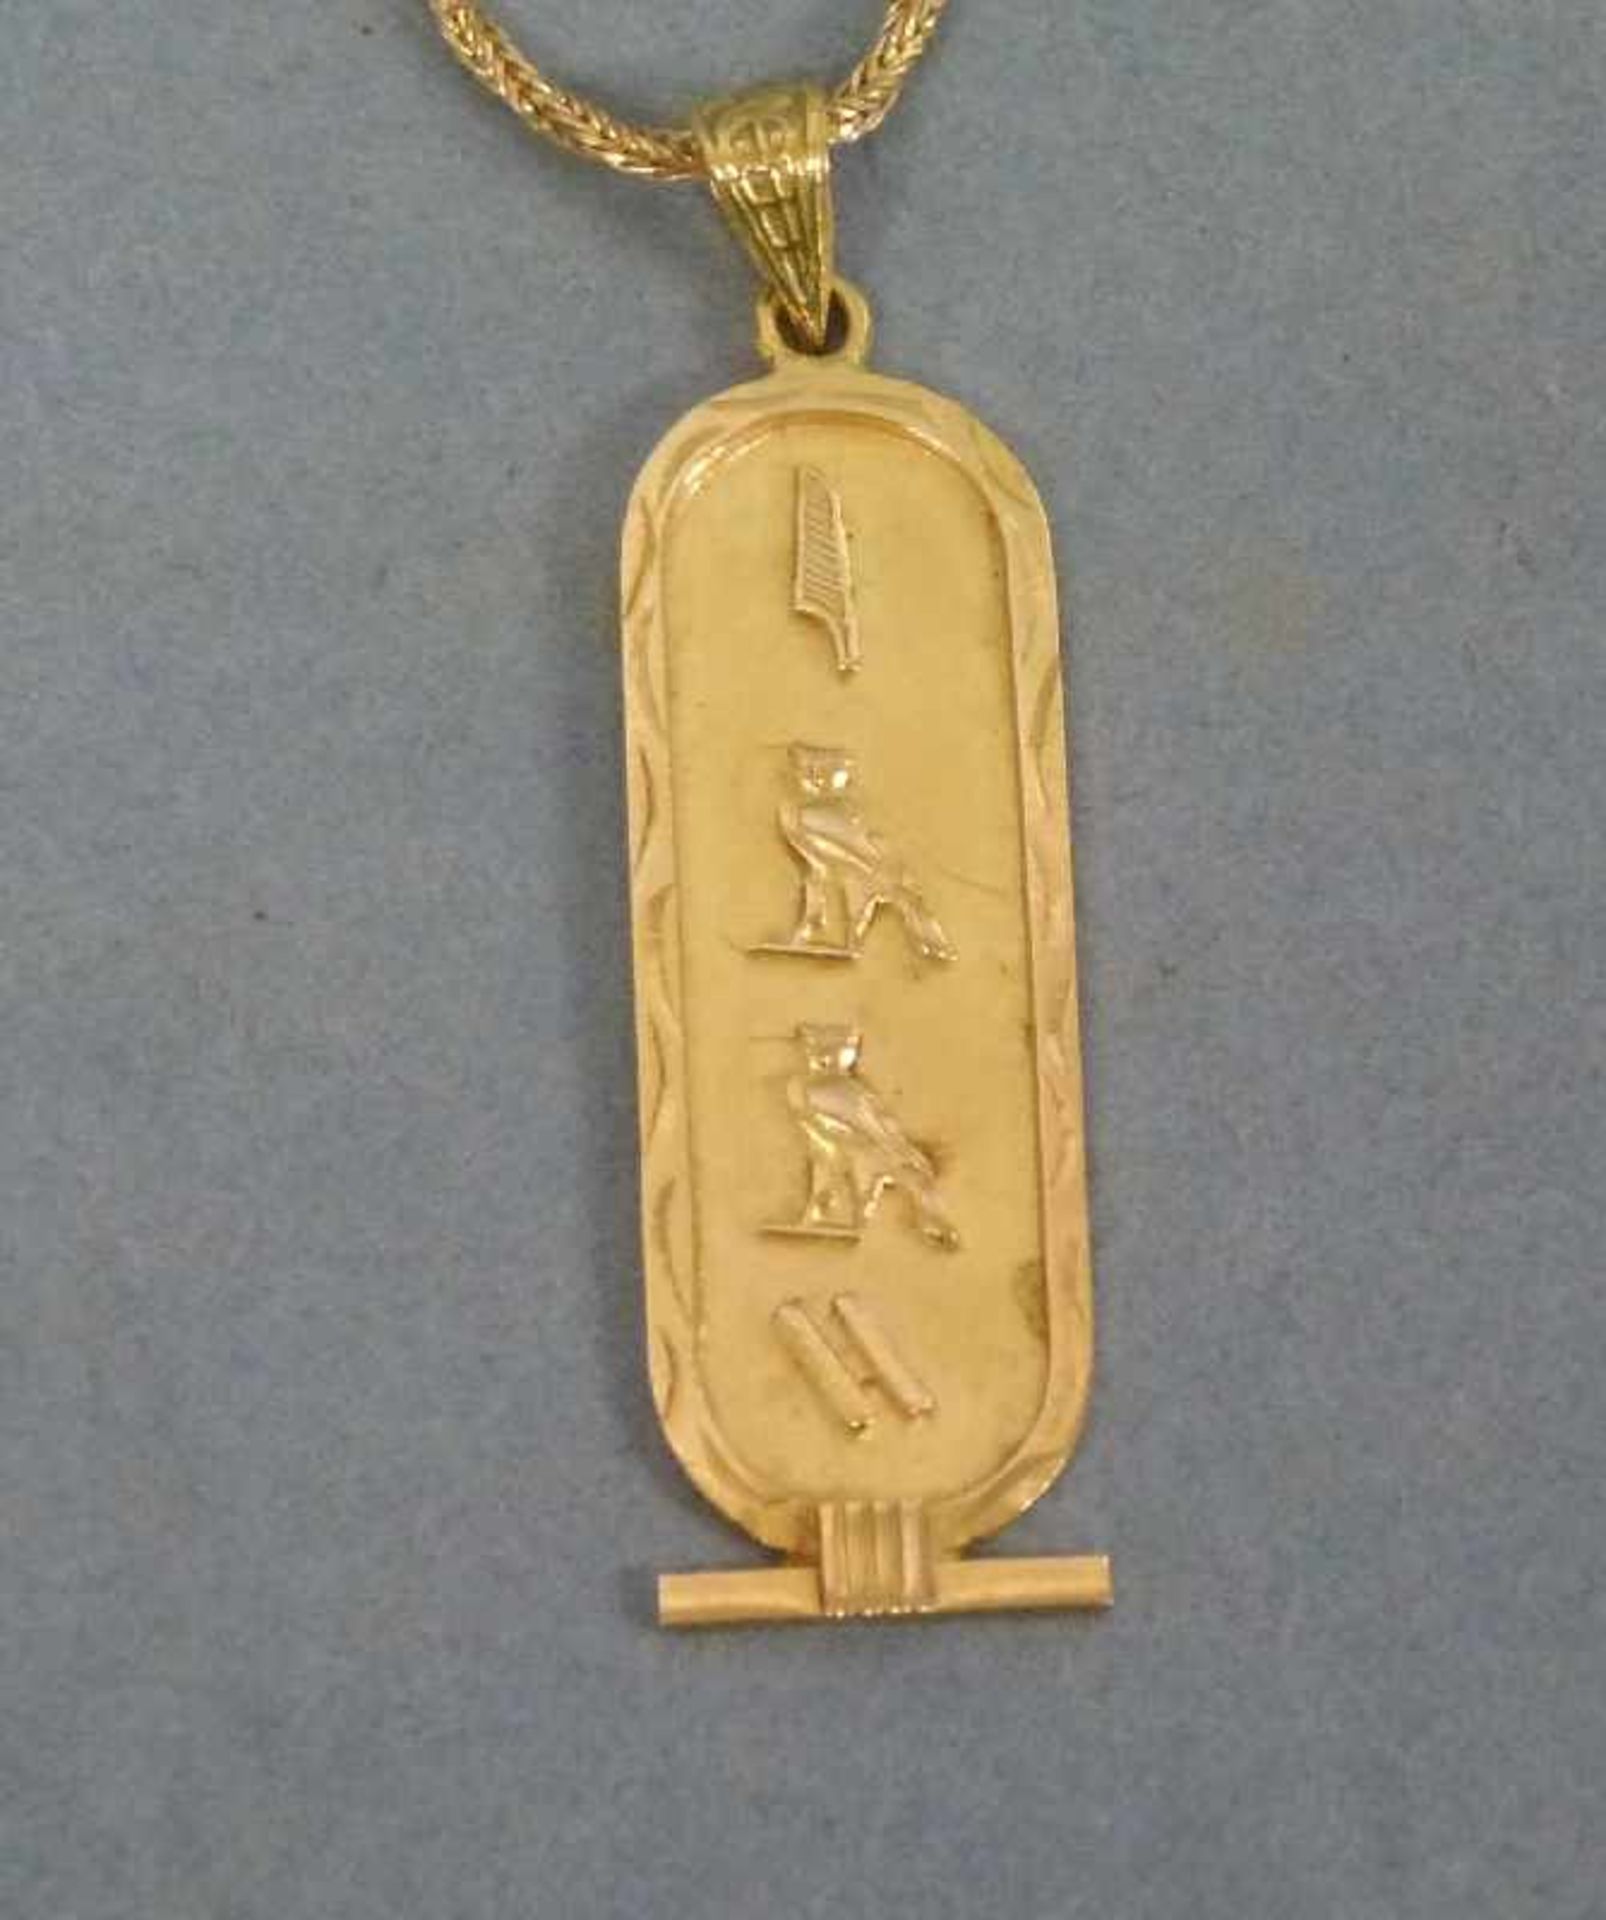 Collierkette, 750er Gelbgold Anhänger m. ägyptischen Zeichen an Kordelkette, L 61 cm, 10,8 g - Bild 2 aus 2